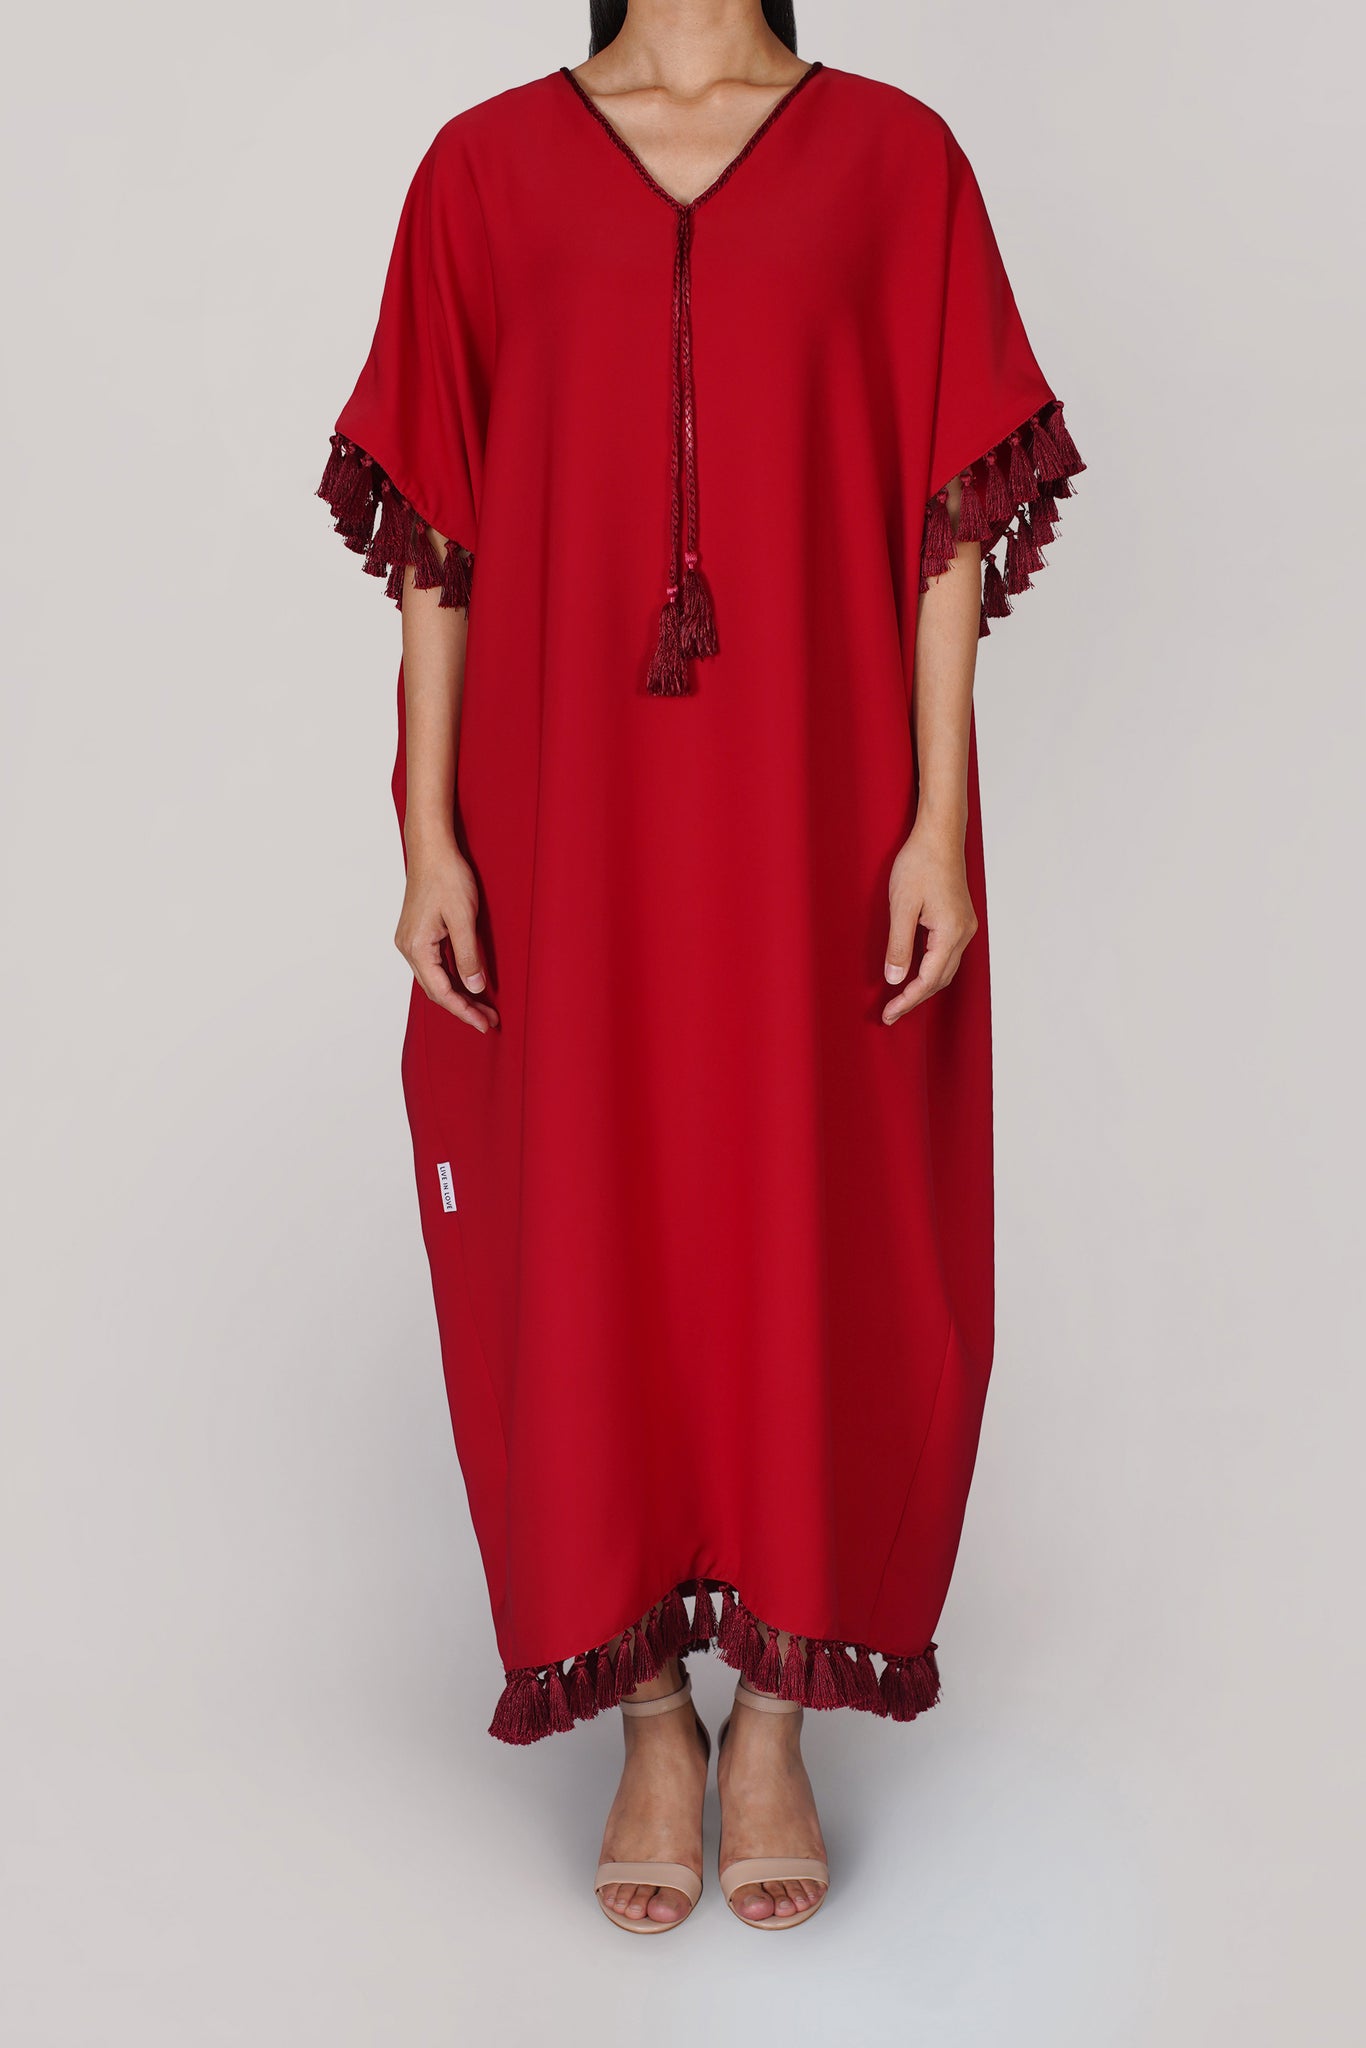 Red Tassel Dress (041)